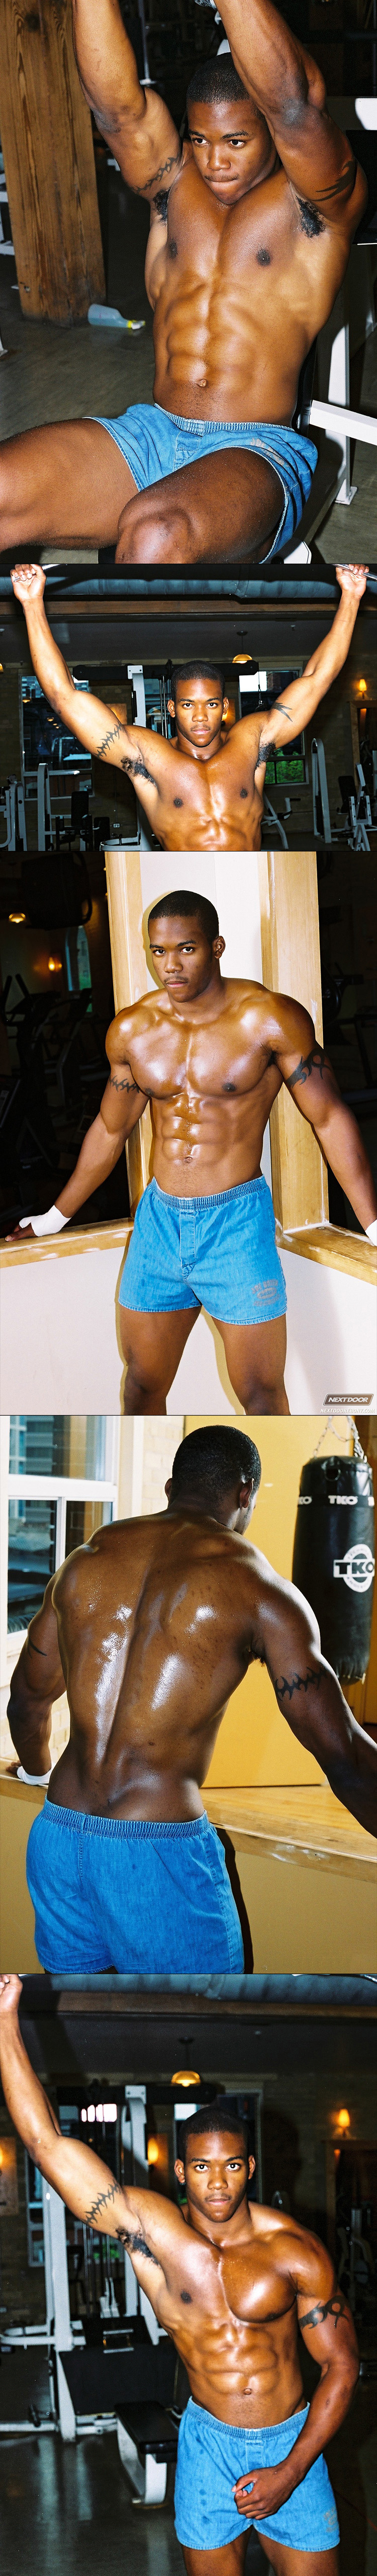 NextDoorEbony Houston Black muscular jock gay solo masturbation scene black male feet shower steam room (3)